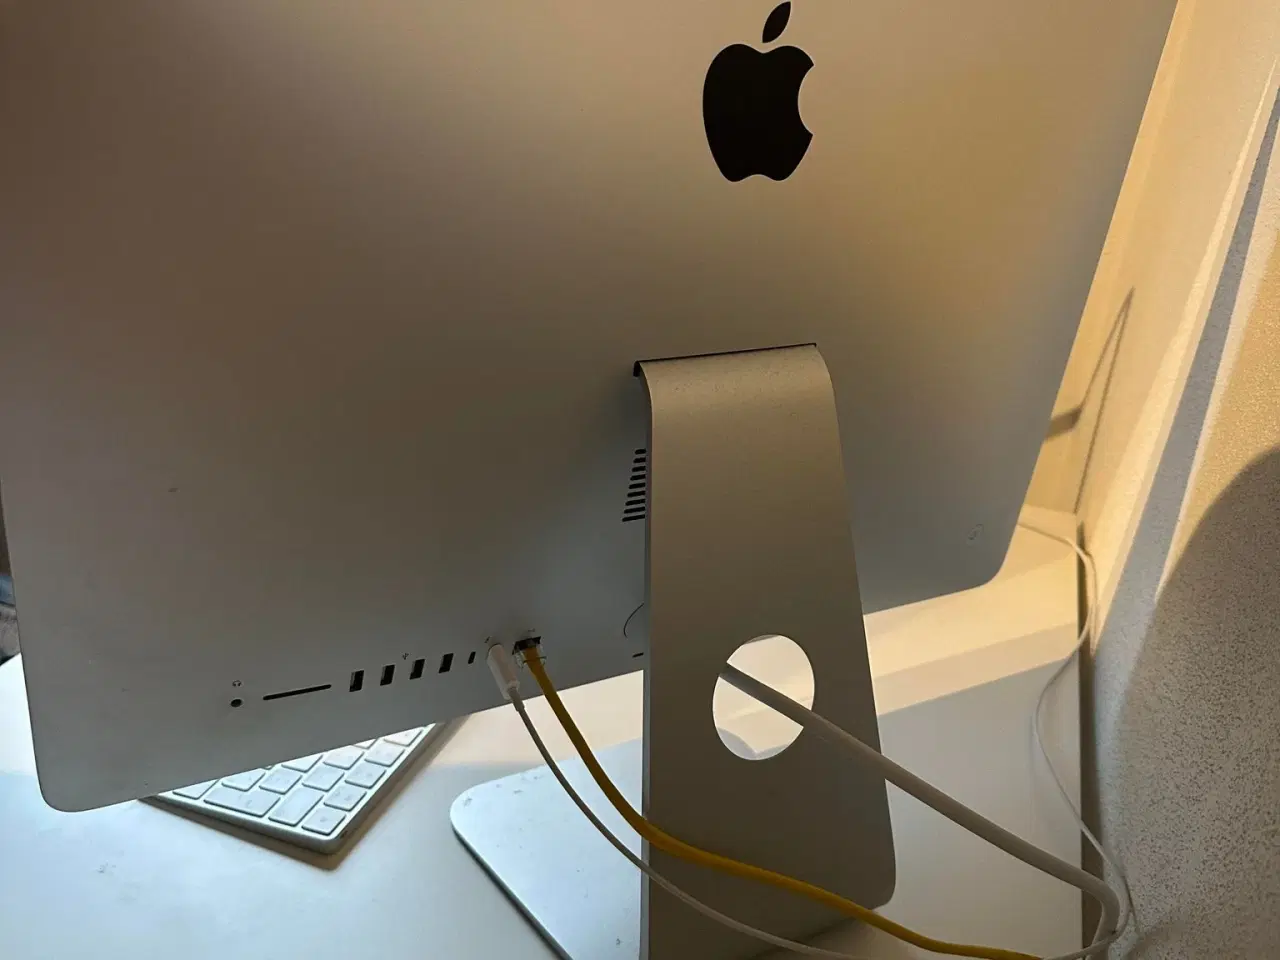 Billede 4 - iMac model MHK03DK/A fra 2020